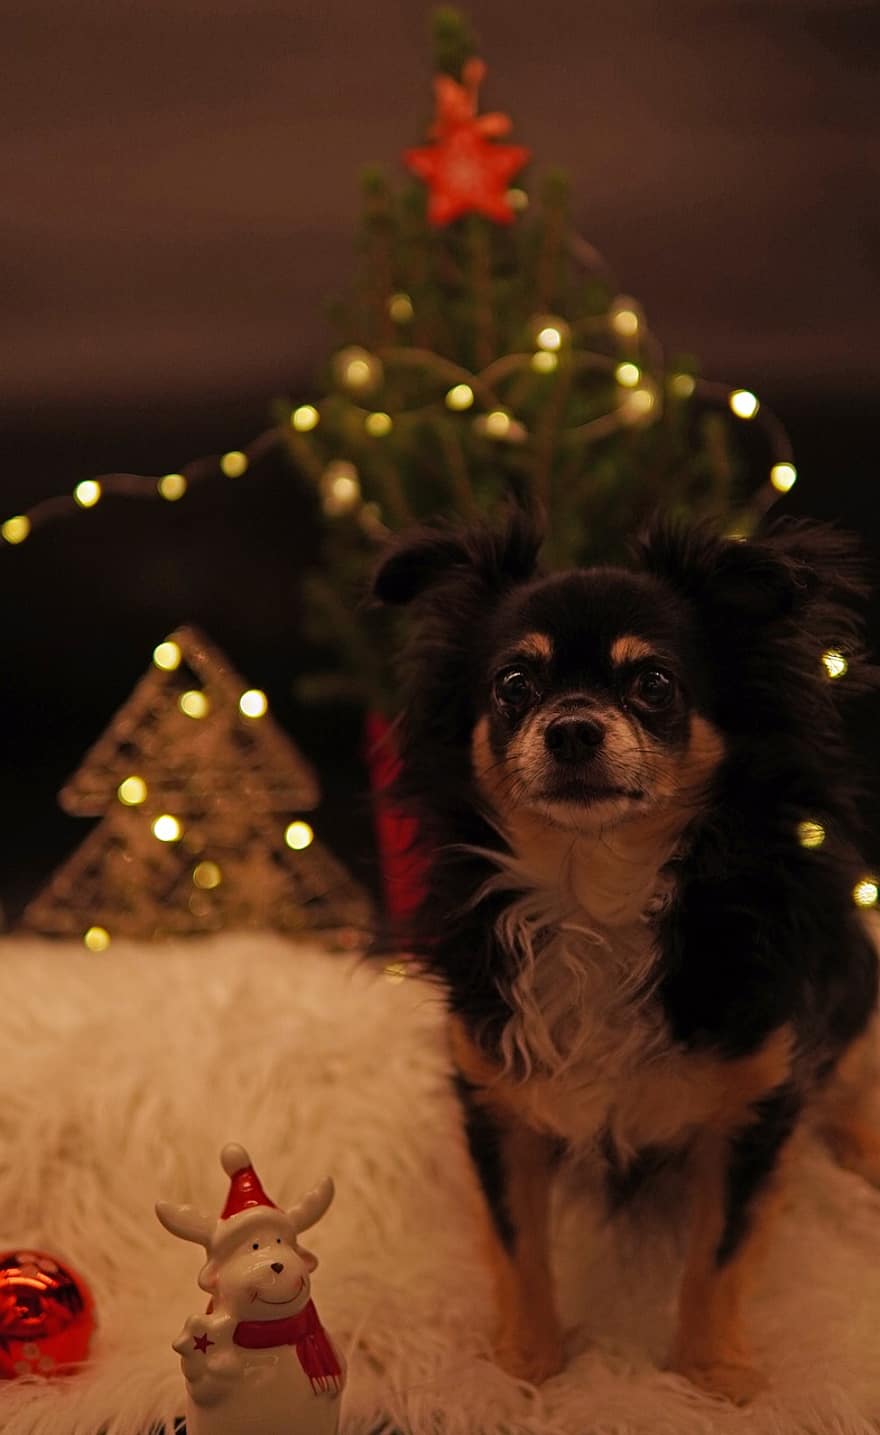 개, 치와와, 전나무, 크리스마스, 행복한 휴일, 크리스마스 카드, 불, 크리스마스 장식, 동물, 귀엽다